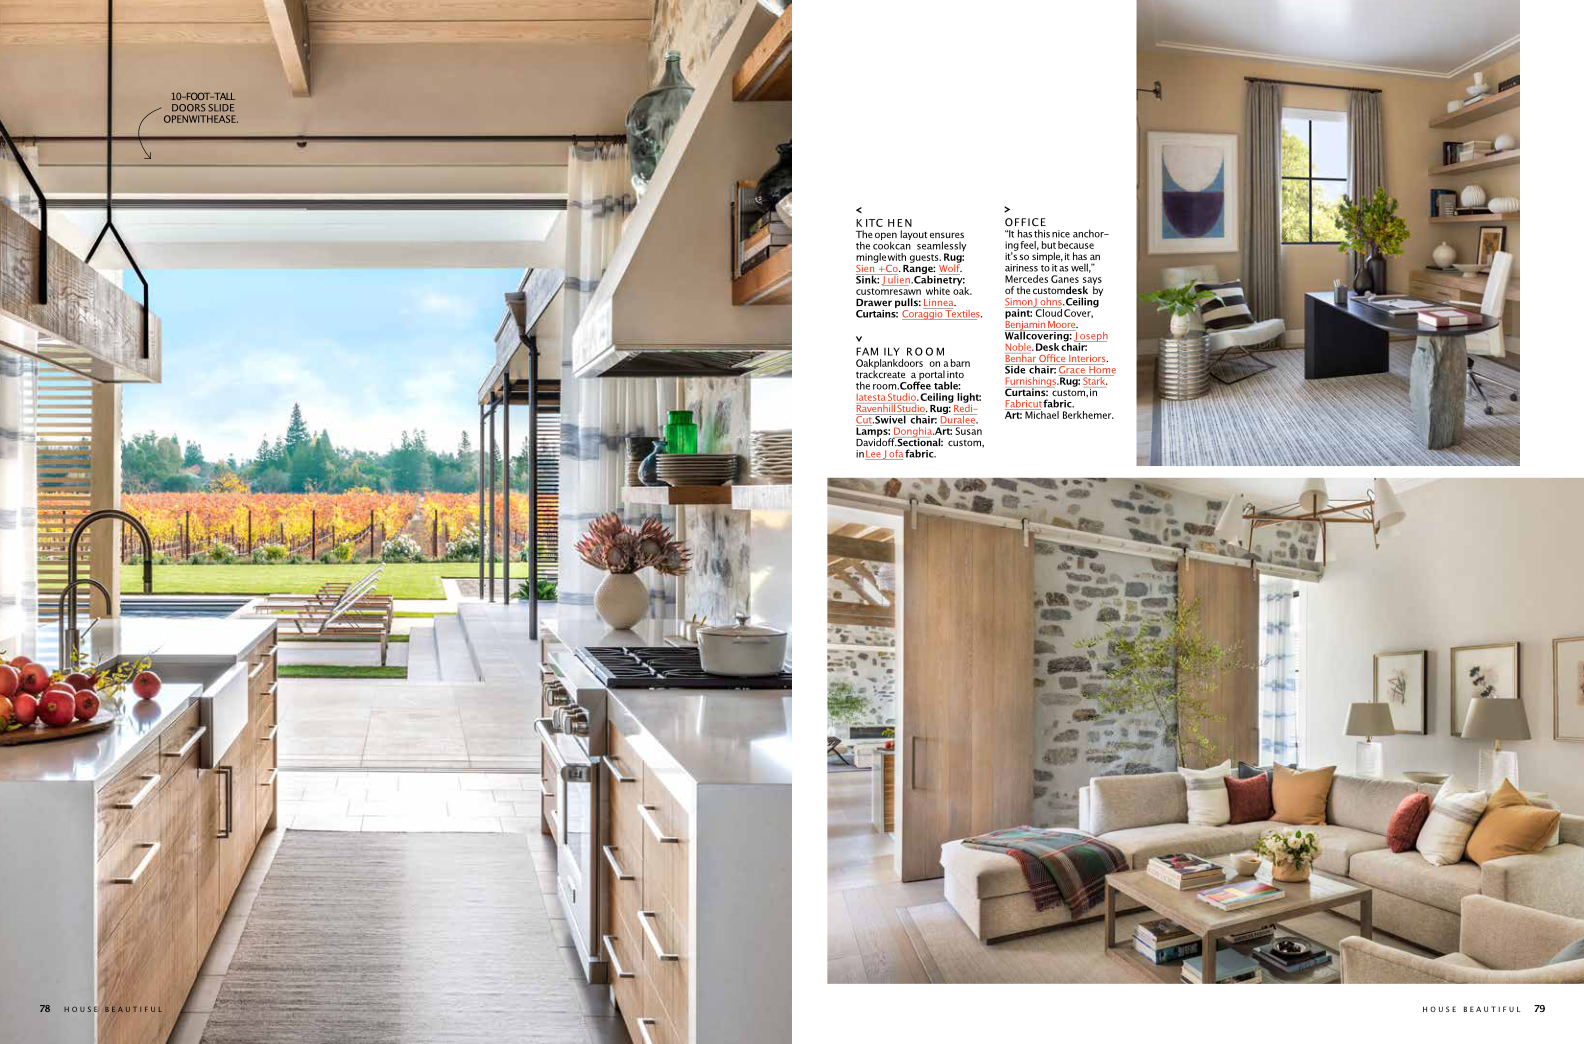 magazine page showing interior kitchen photos